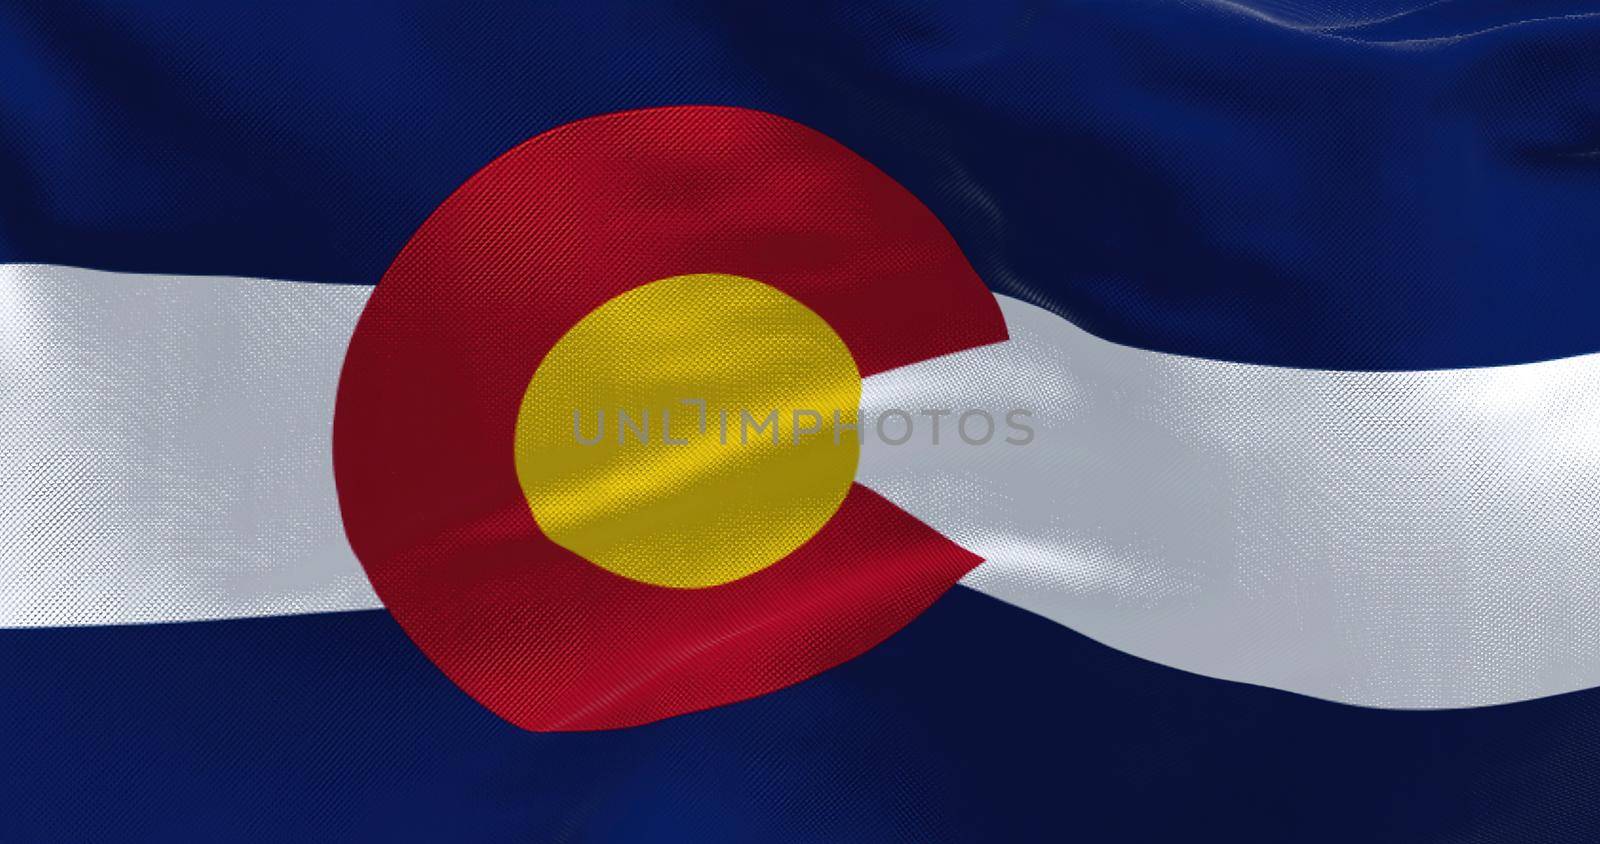 Close-up view of the Colorado flag waving by rarrarorro